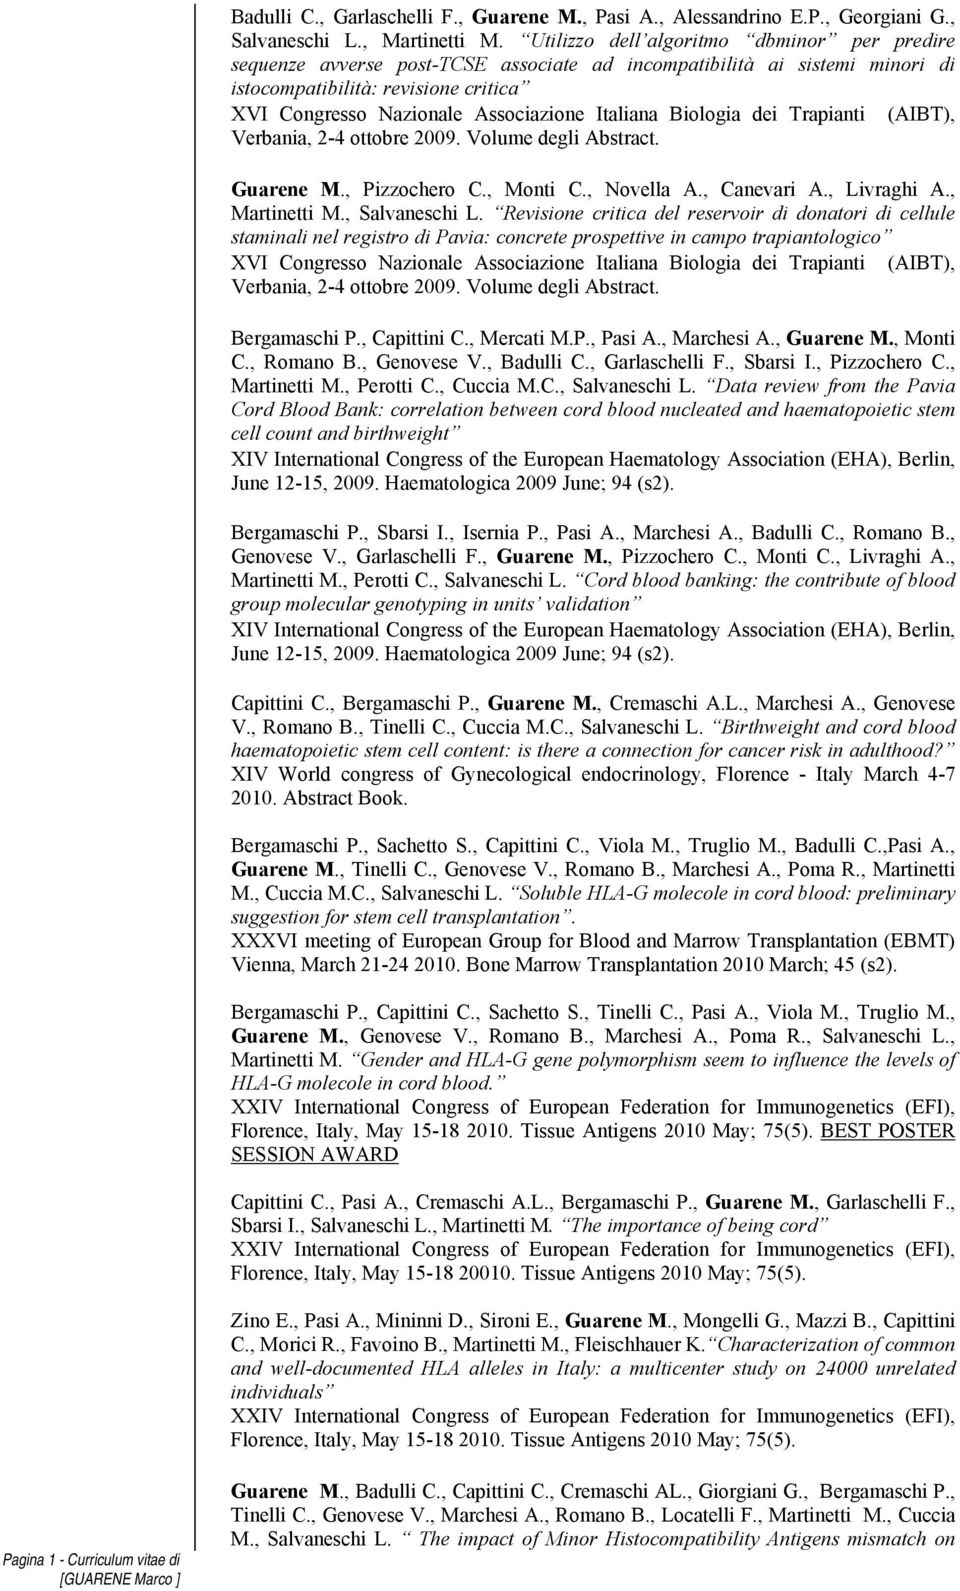 Italiana Biologia dei Trapianti (AIBT), Verbania, 2-4 ottobre 2009. Volume degli Abstract. Guarene M., Pizzochero C., Monti C., Novella A., Canevari A., Livraghi A., Martinetti M., Salvaneschi L.